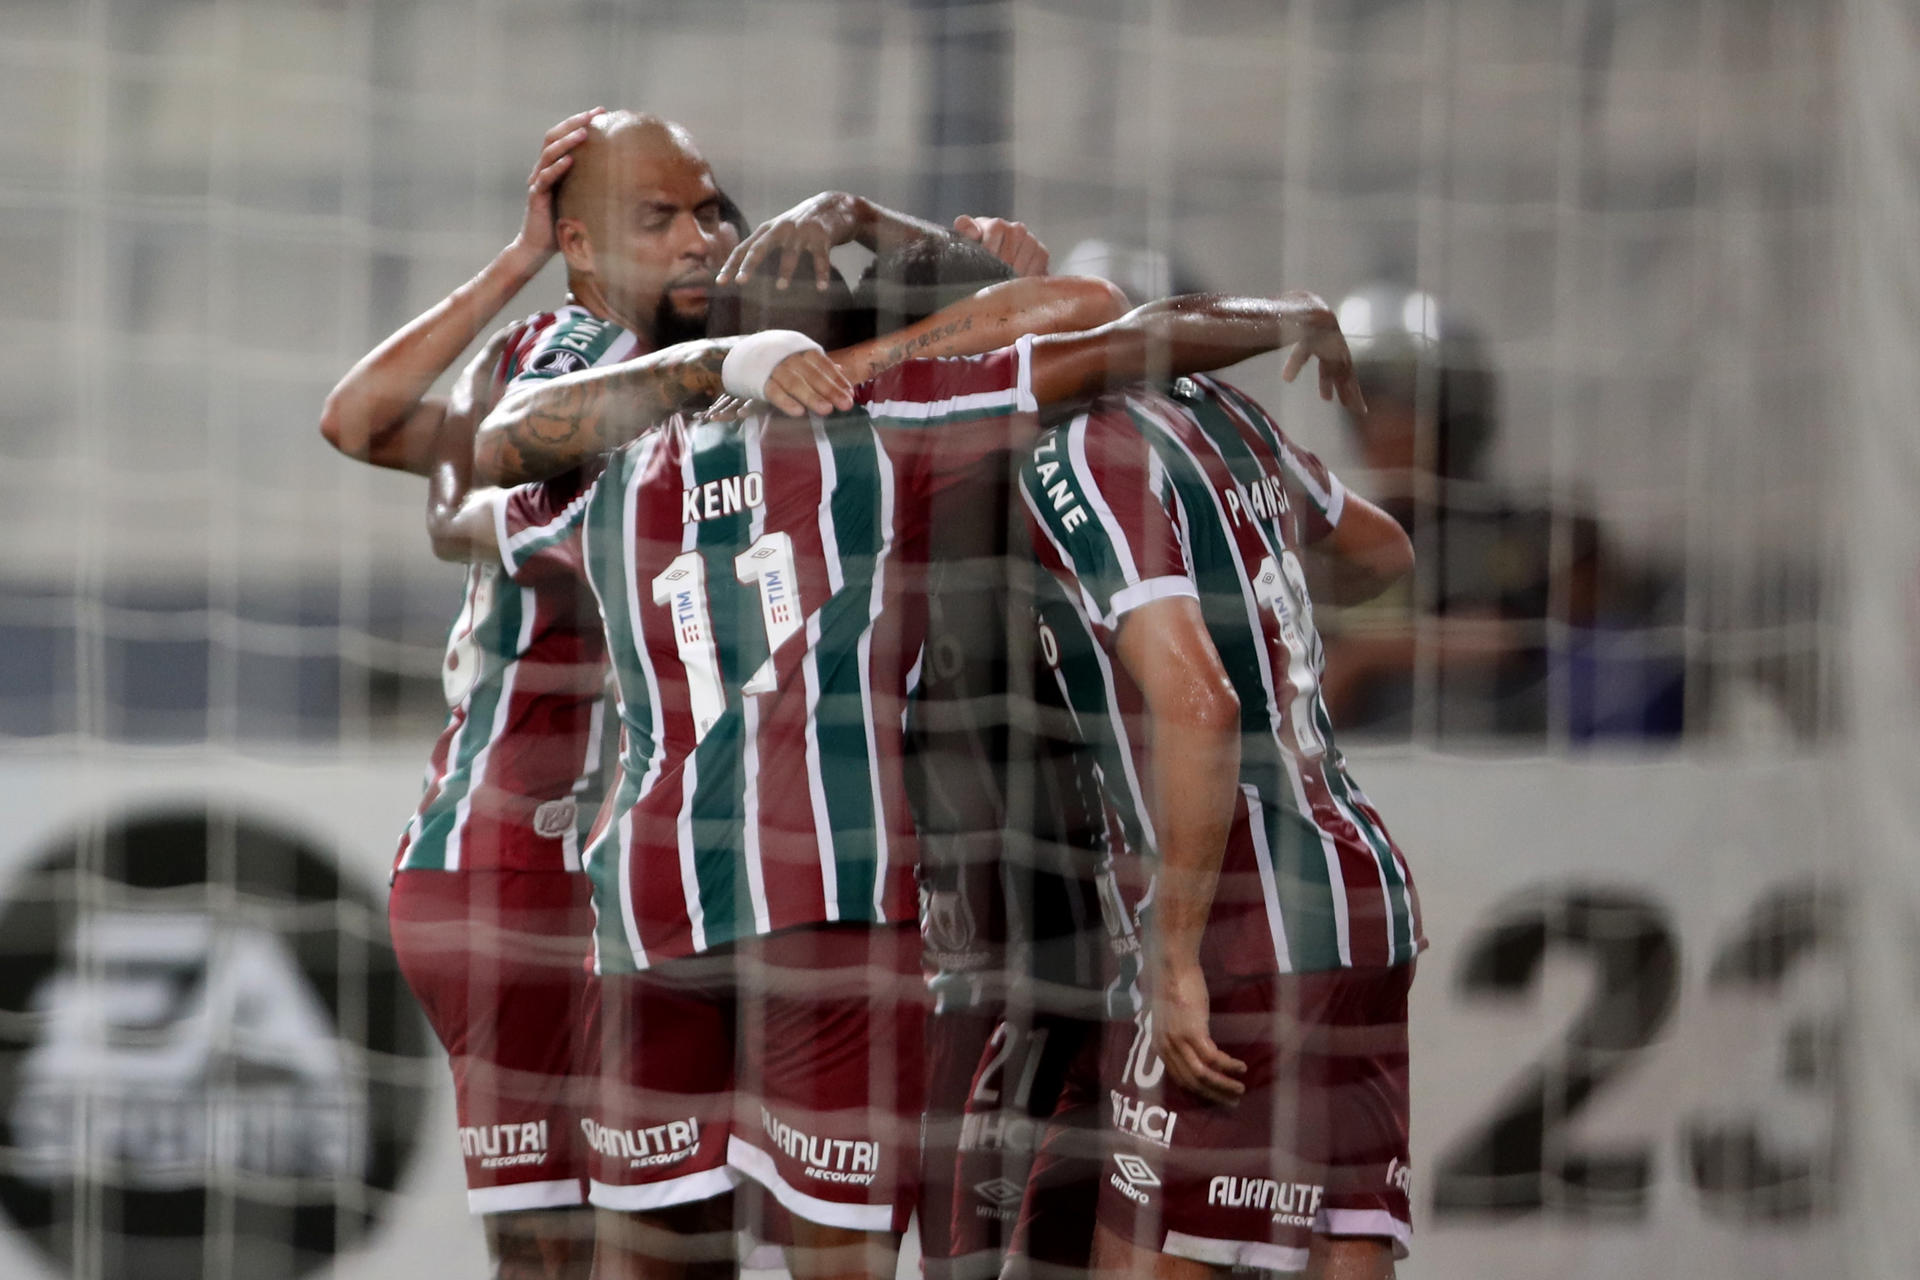 Jugadores de Fluminense, en una imagen de archivo. EFE/ Paolo Aguilar